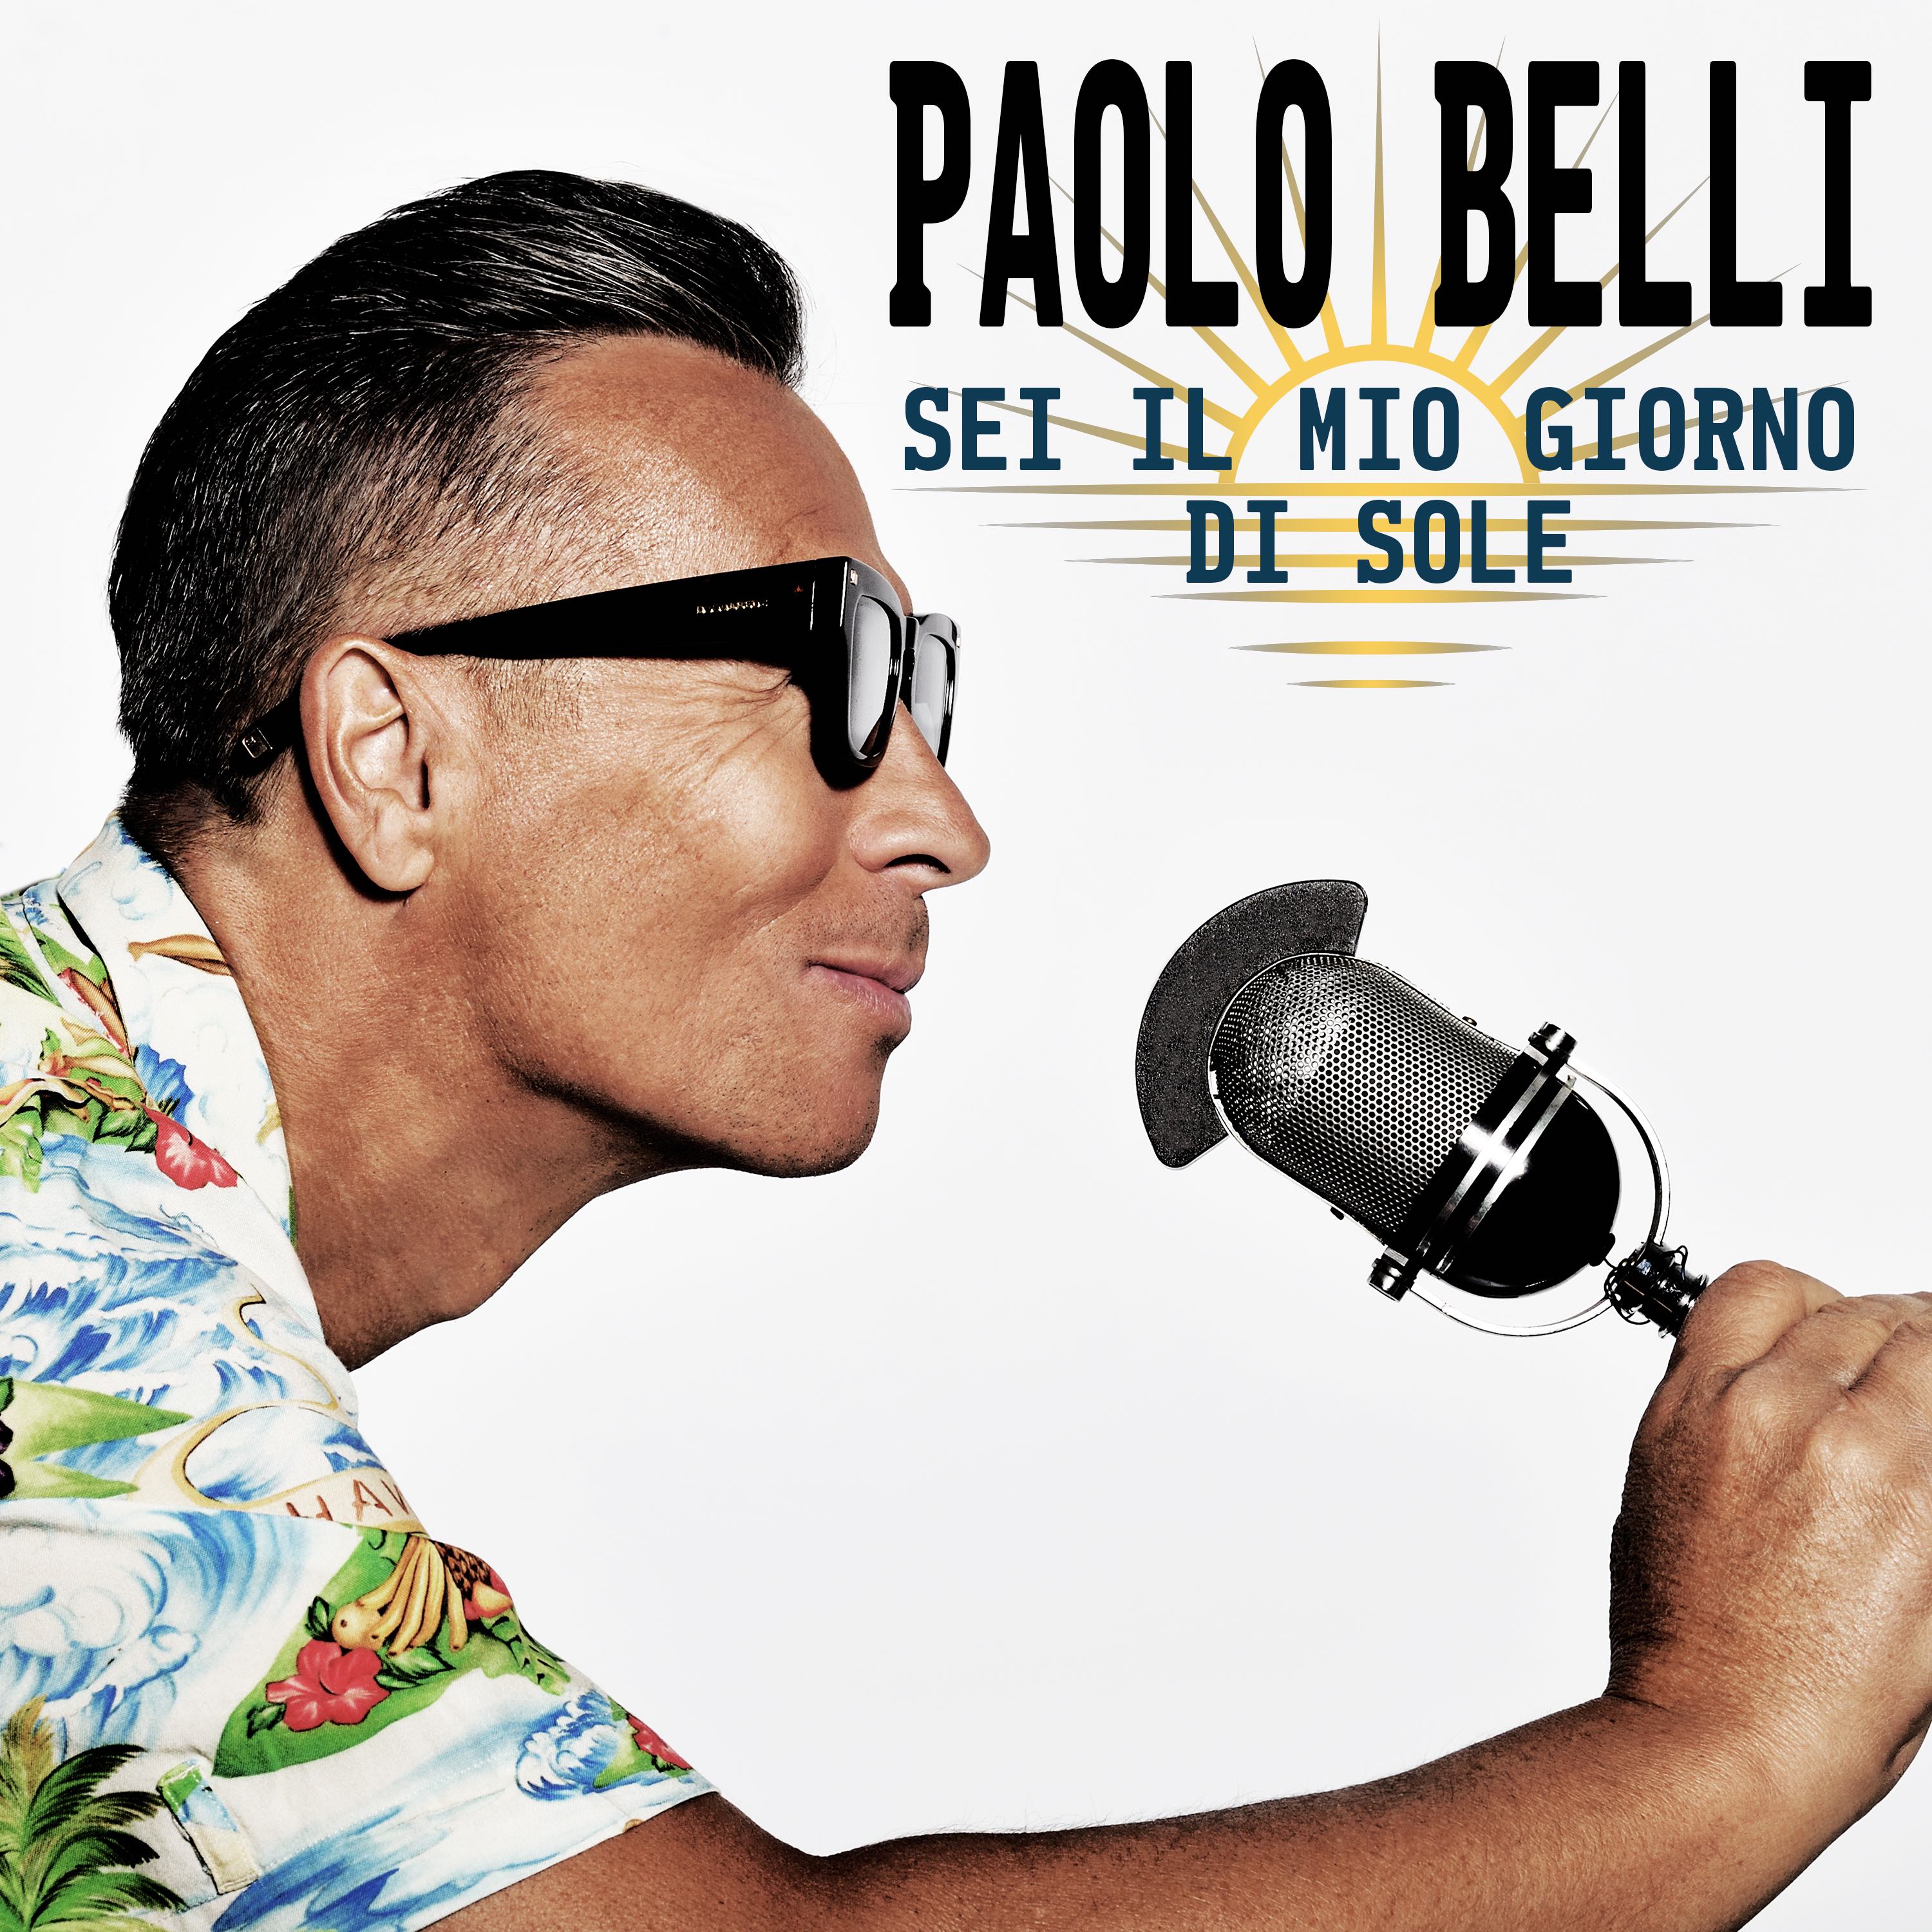 Paolo Belli: “Sei il mio giorno di sole” il nuovo singolo